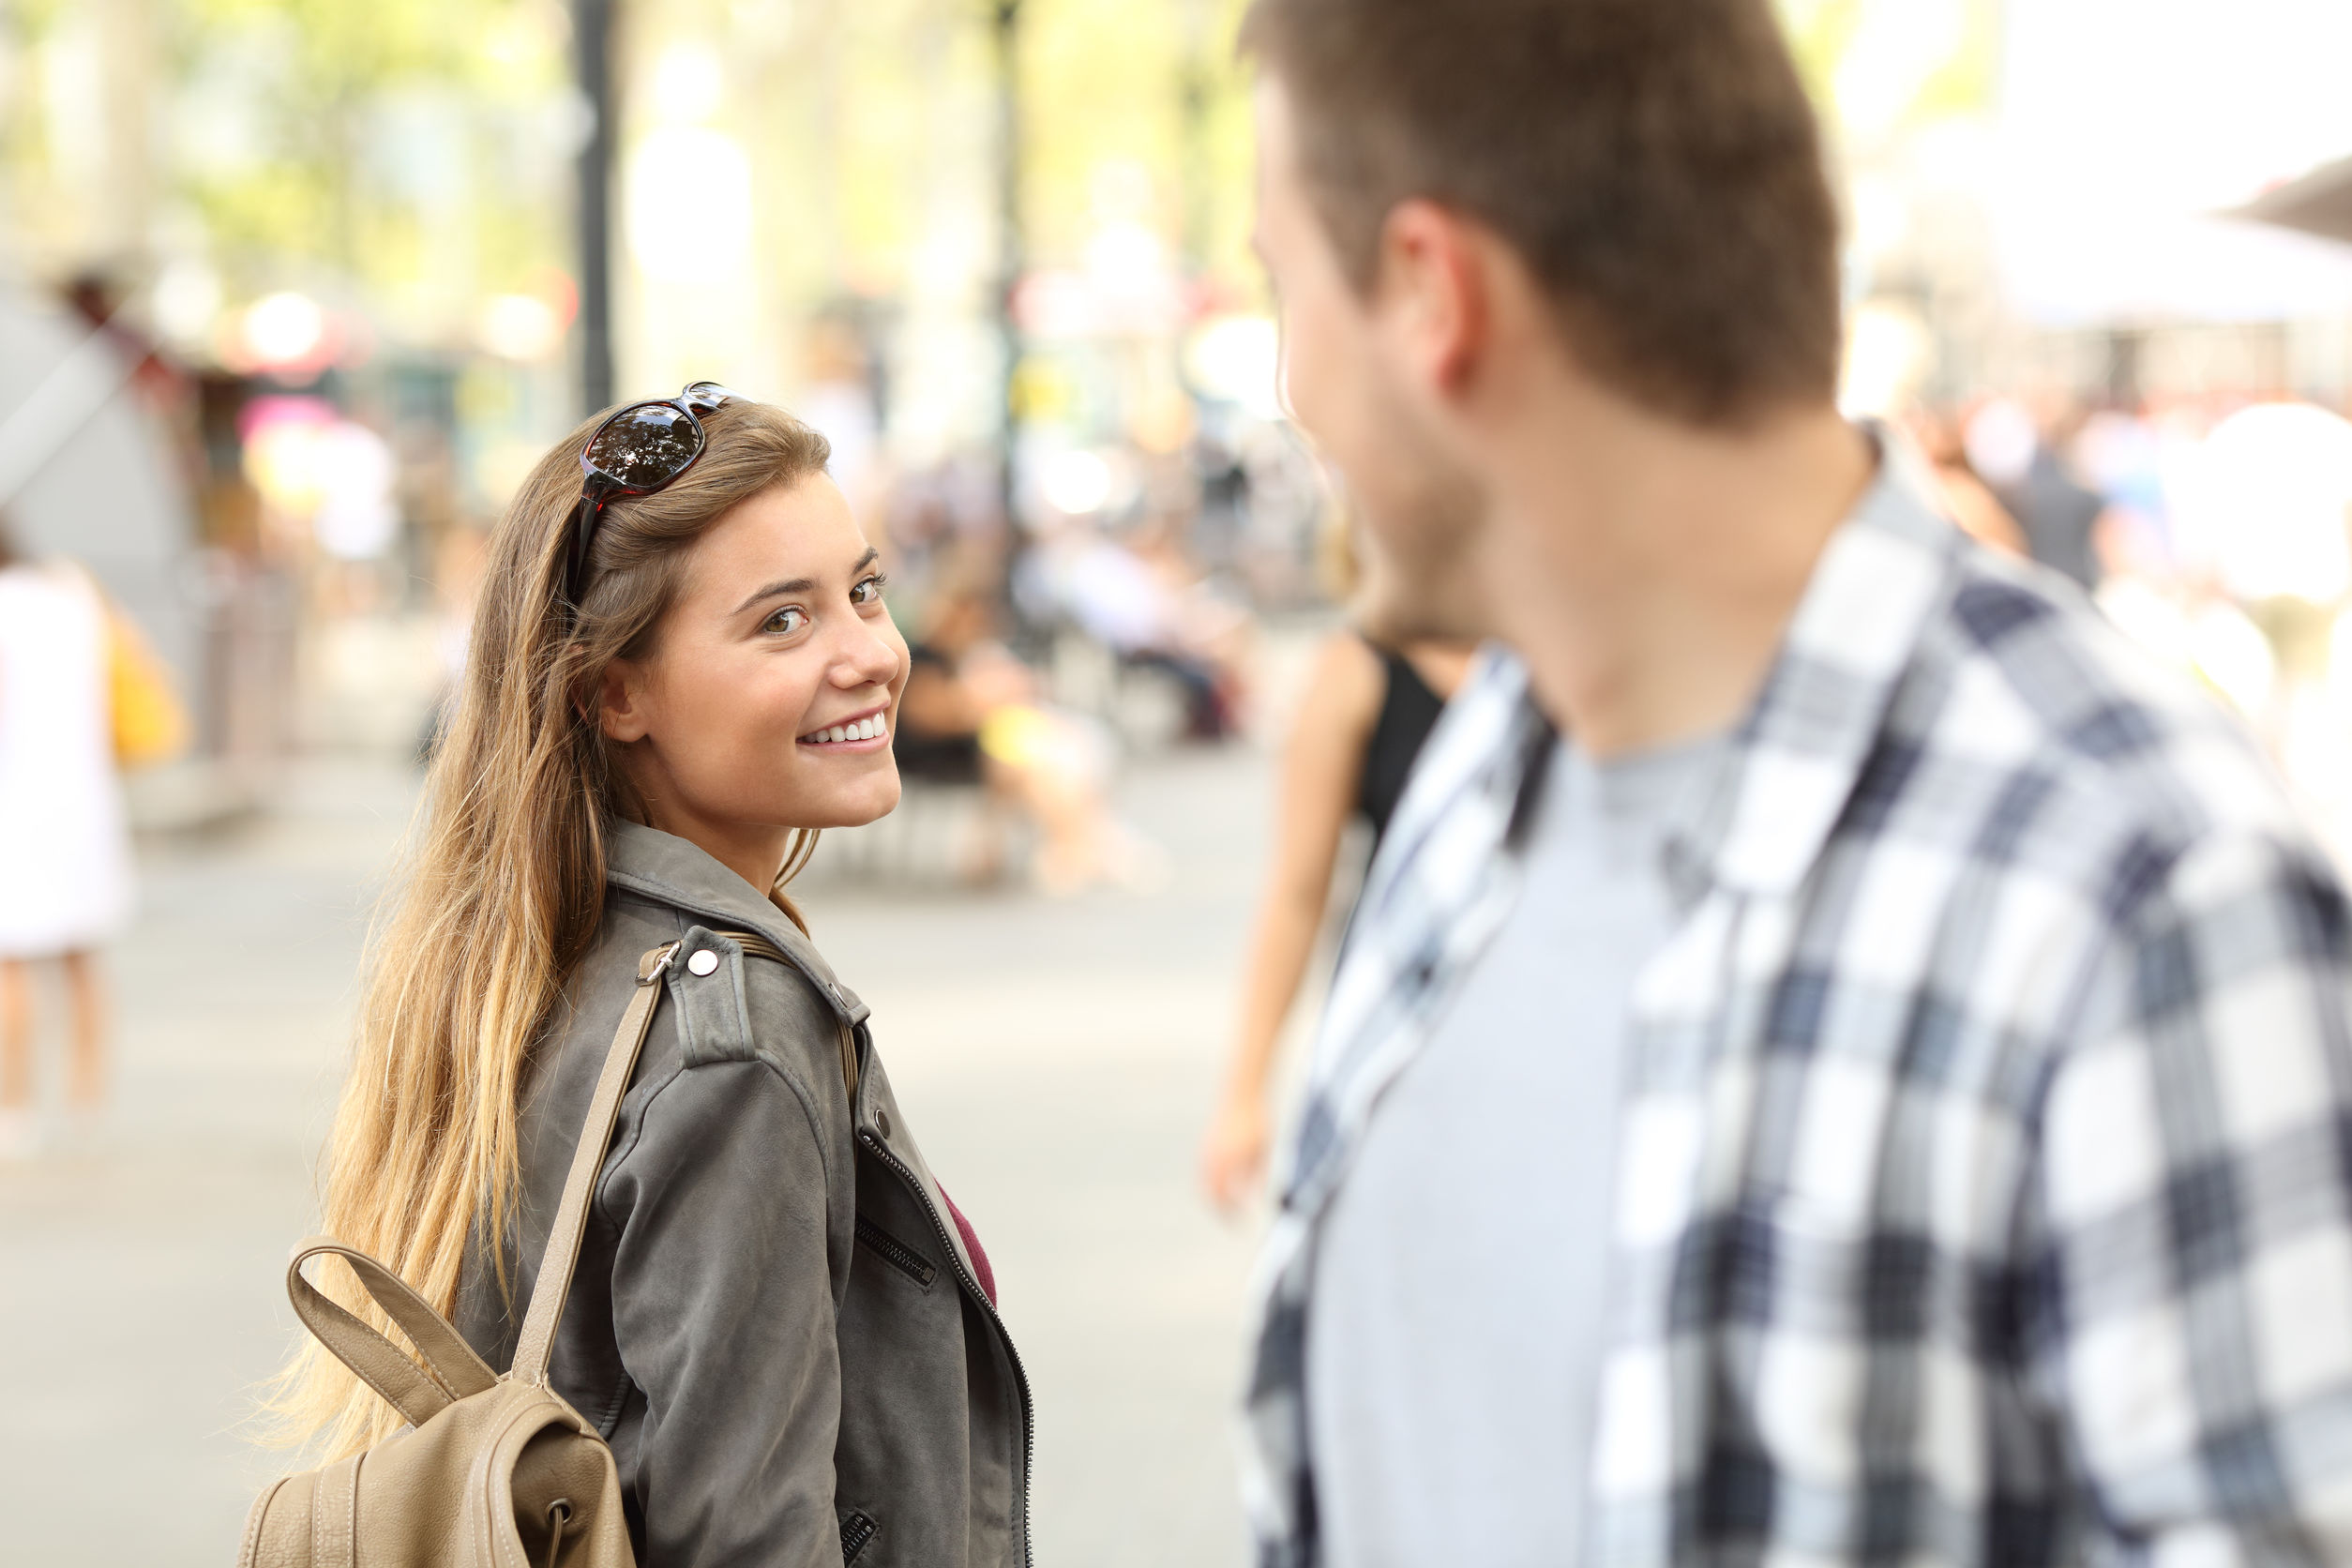 Strangers Girl And Guy Flirting On The Street.